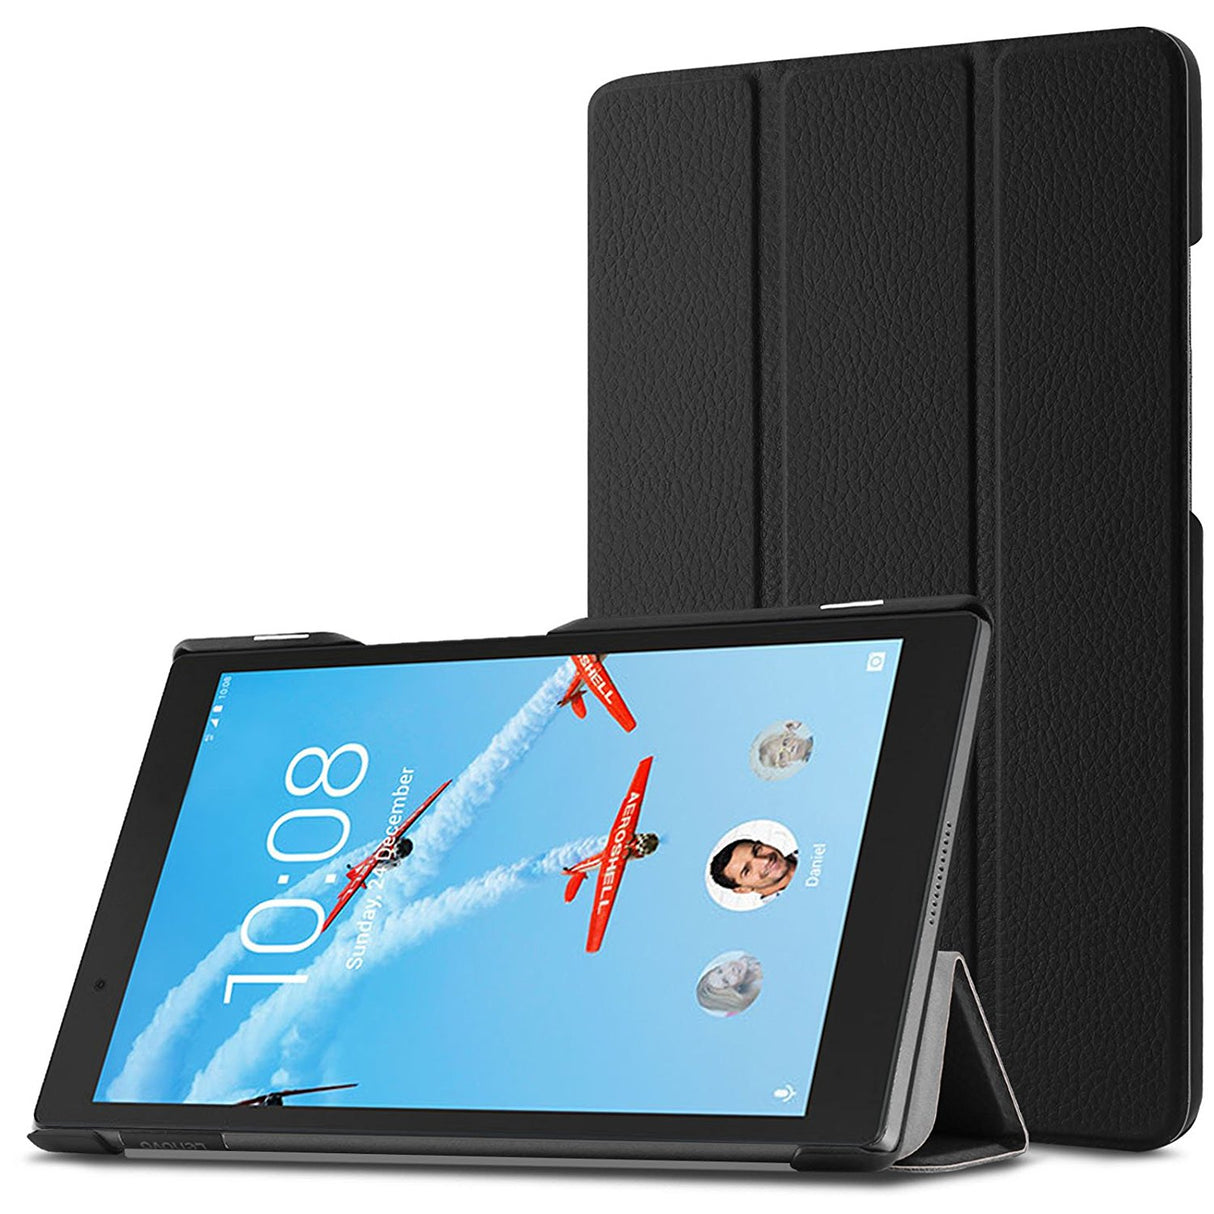 Capa 3 Dobras Smart Case Trifold Slim para Lenovo Tab 4 8 Plus - Multi4you®